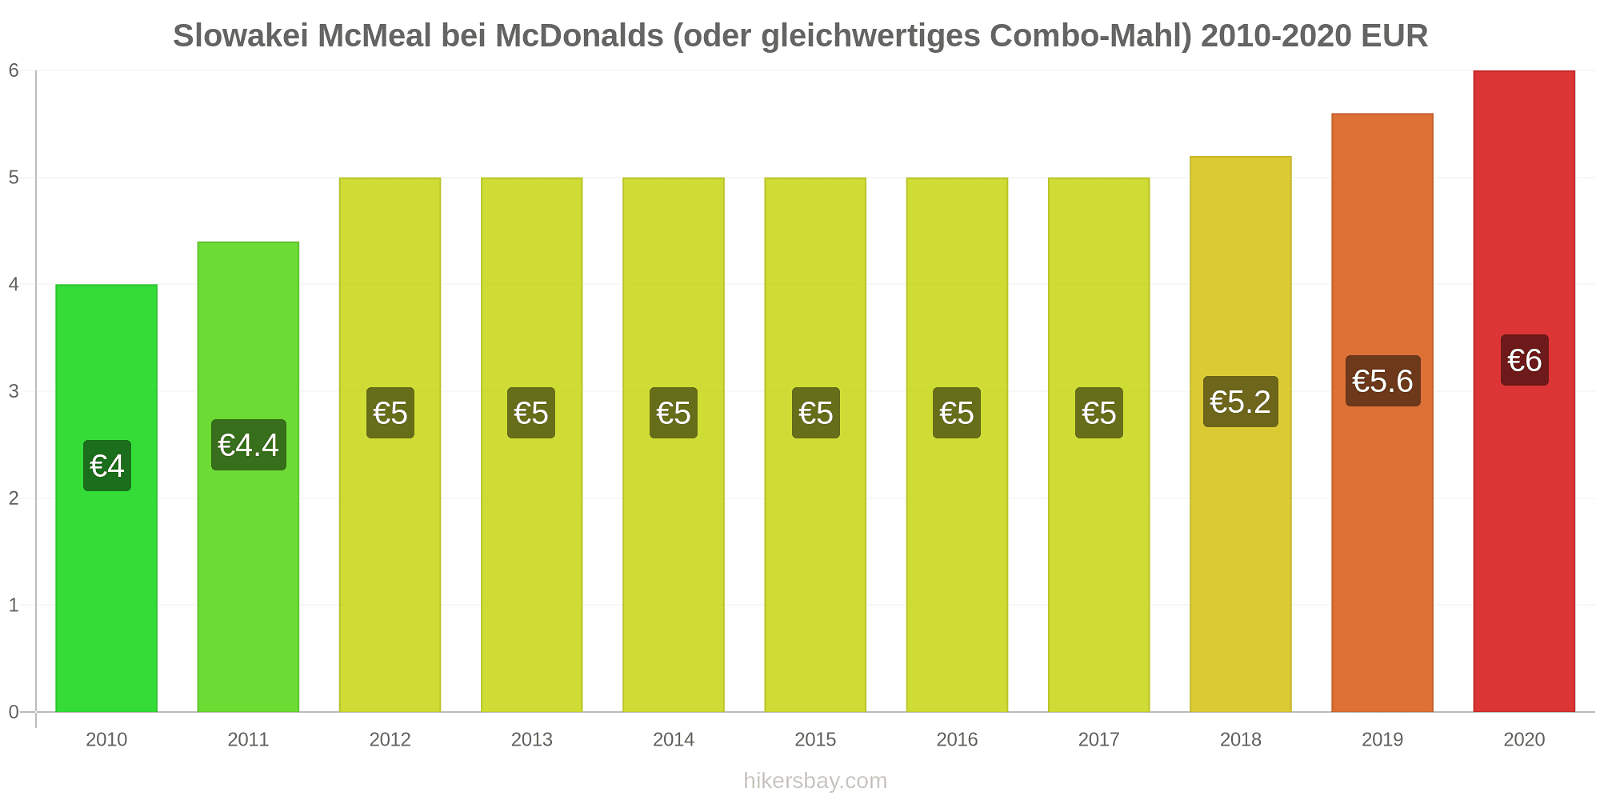 Slowakei Preisänderungen McMeal bei McDonalds (oder gleichwertige Combo Meal) hikersbay.com